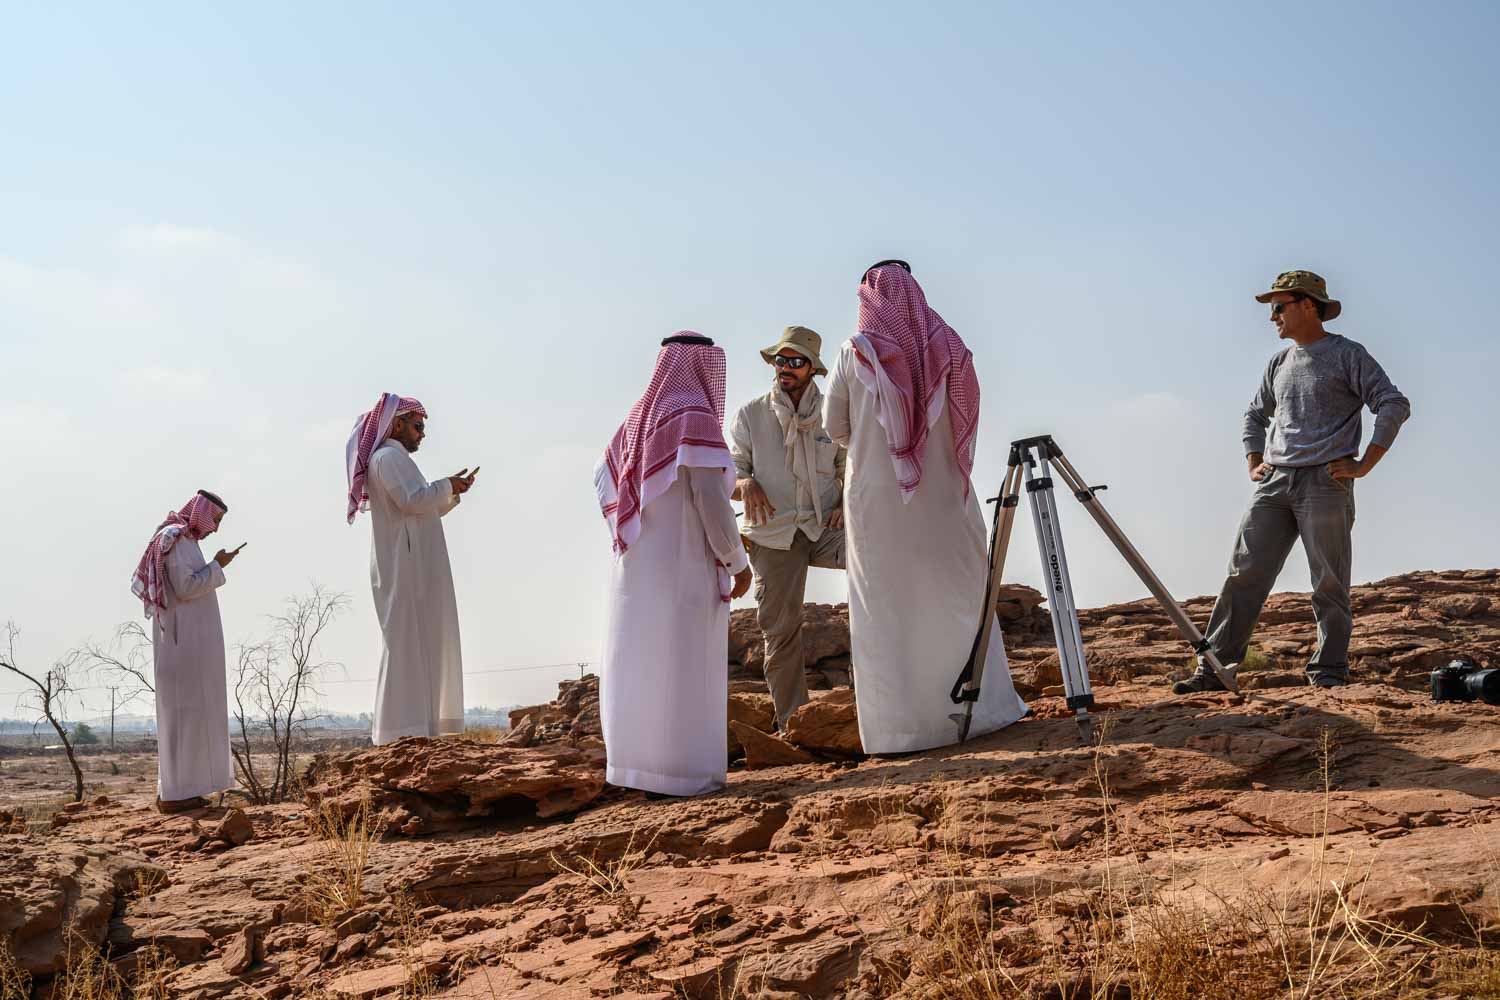 Arabie saoudite, région de Al Jawf, Sakaka, Camel Site. Guillaume Charloux Archéologue (CNRS) discutent des découvertes de la mission et des mesures à prendre afin de protéger le site et de le mettre en valeur avec les responsables locaux de la SCTH (Saudi Commission for Tourism and Heritage).